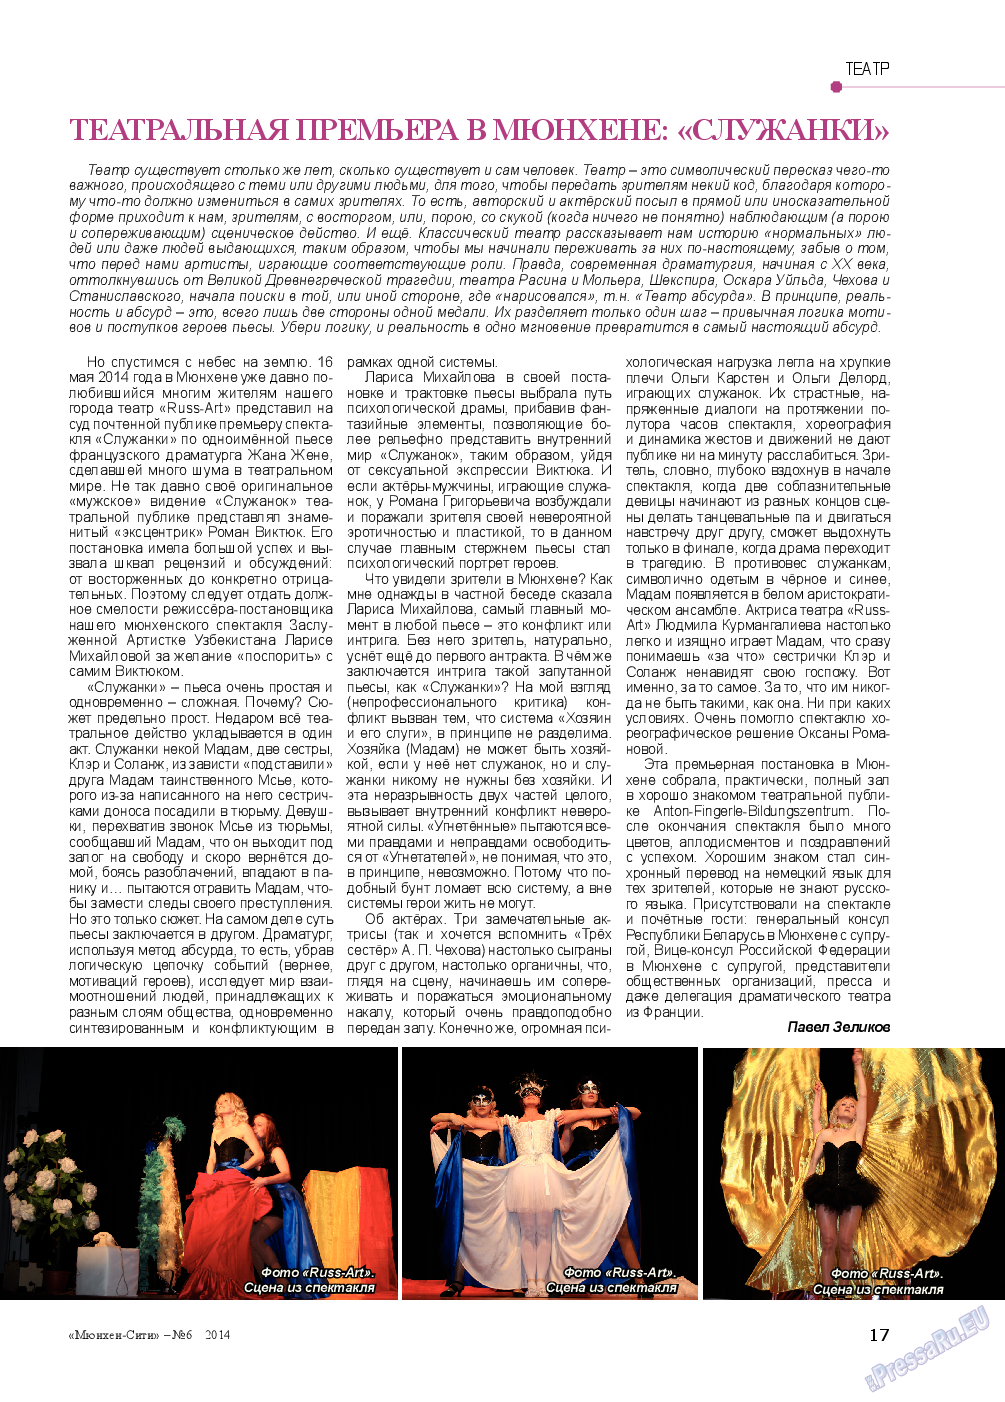 Мюнхен-сити (журнал). 2014 год, номер 6, стр. 17